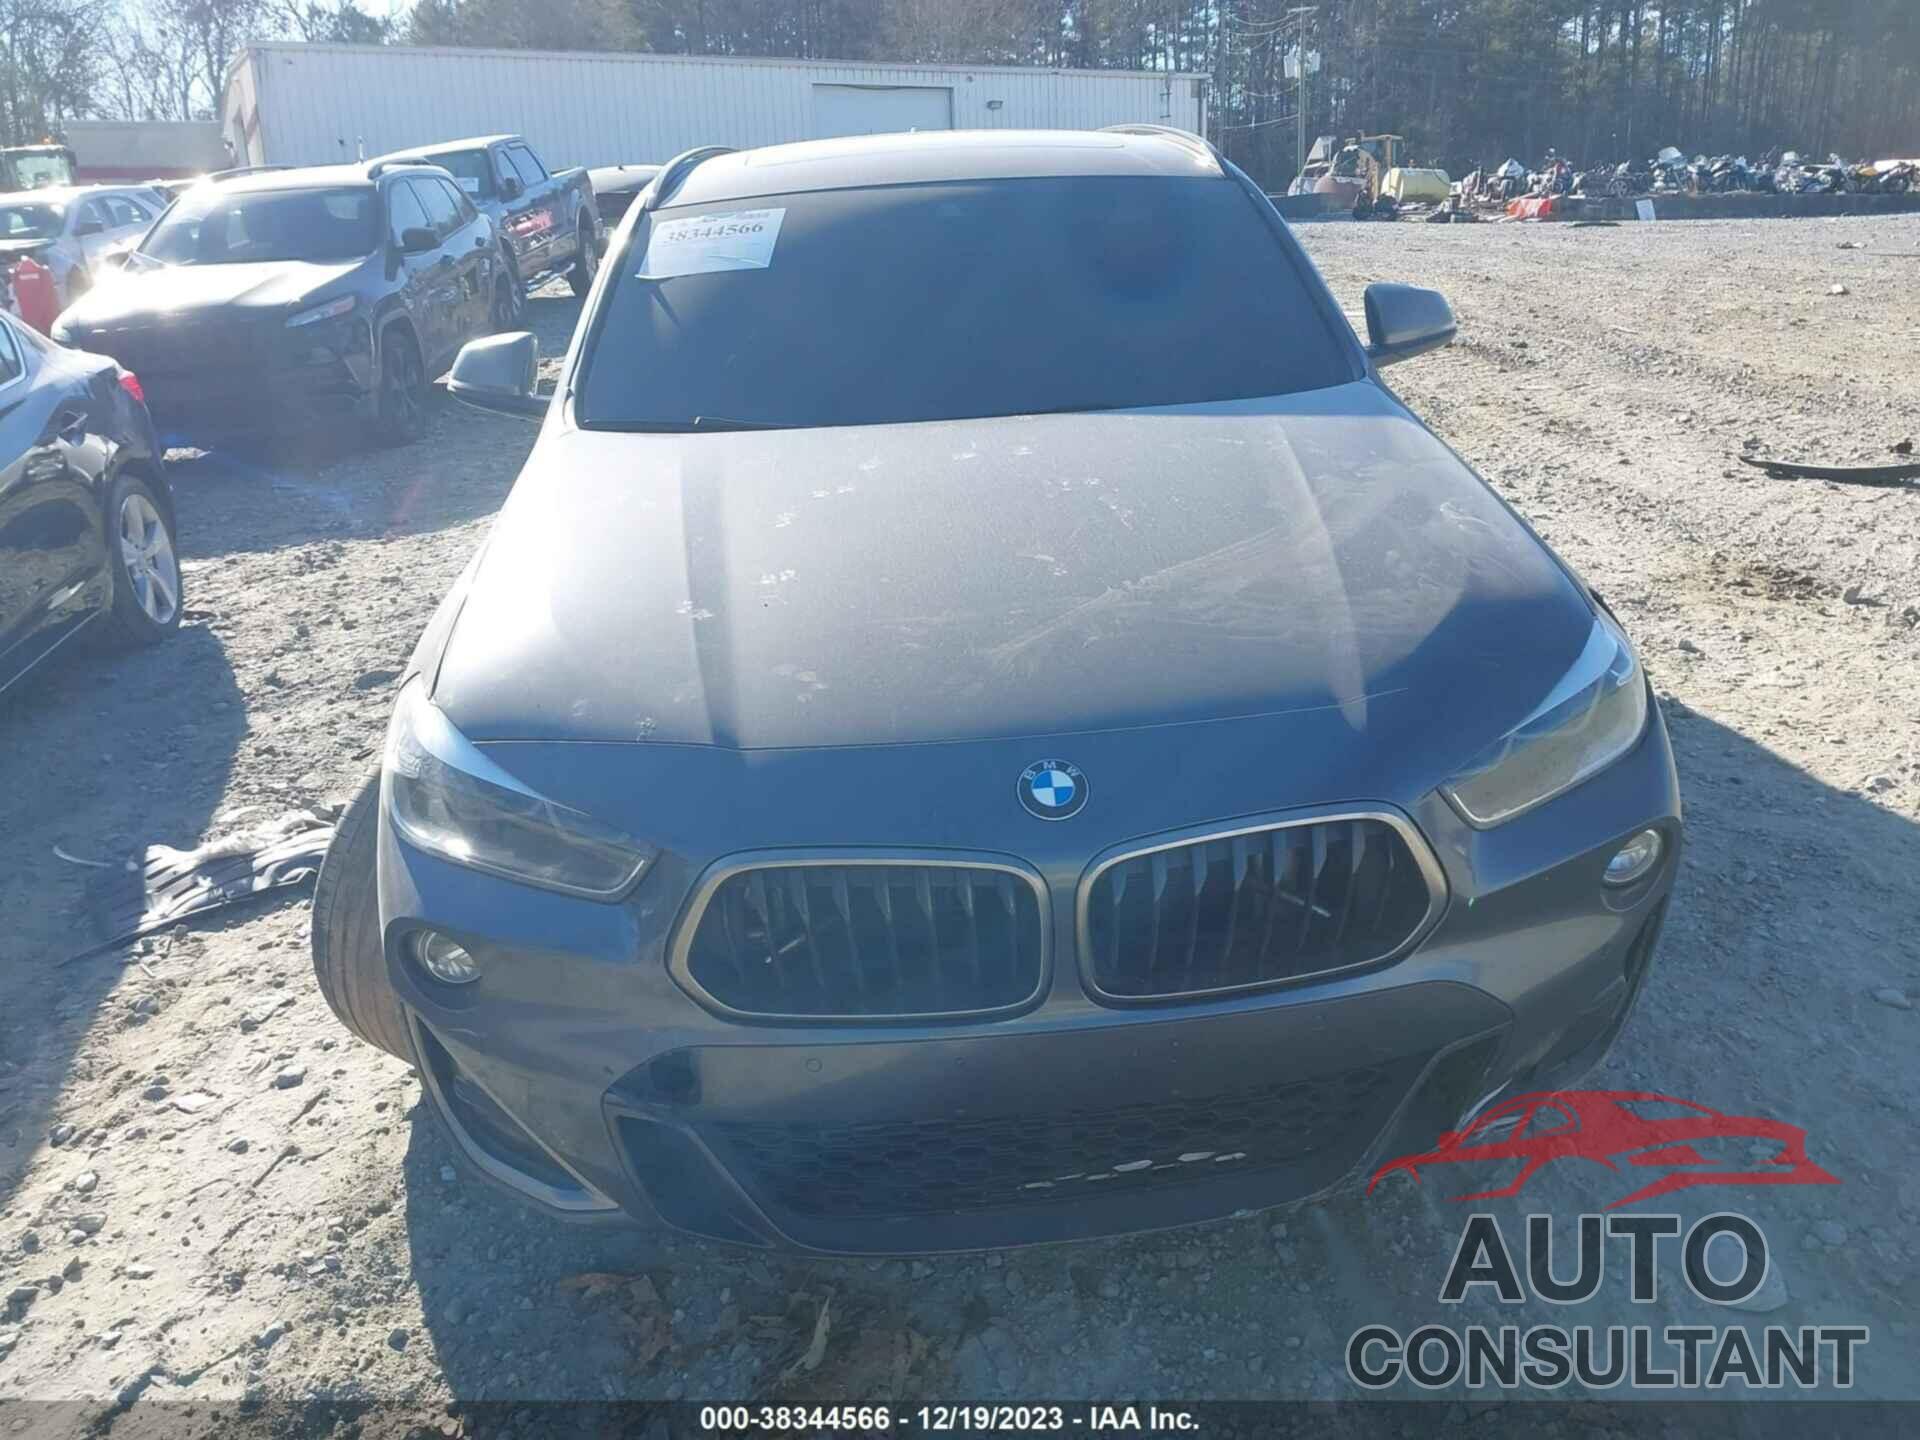 BMW X2 2019 - WBXYN1C50KEF29428